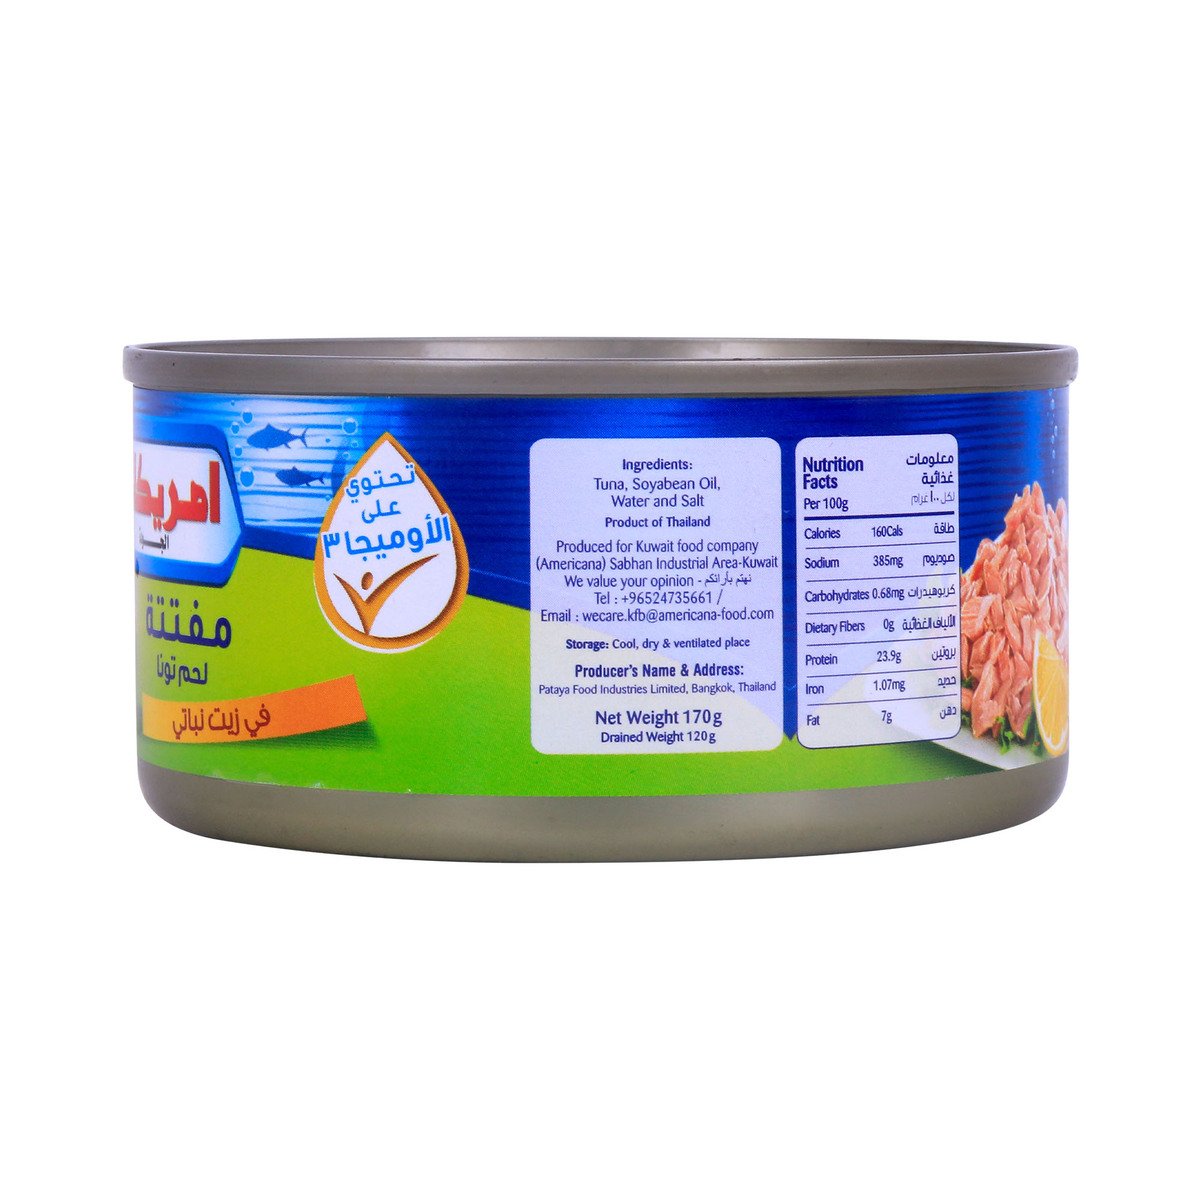 Americana Tuna Flakes In Vegetable Oil 170g